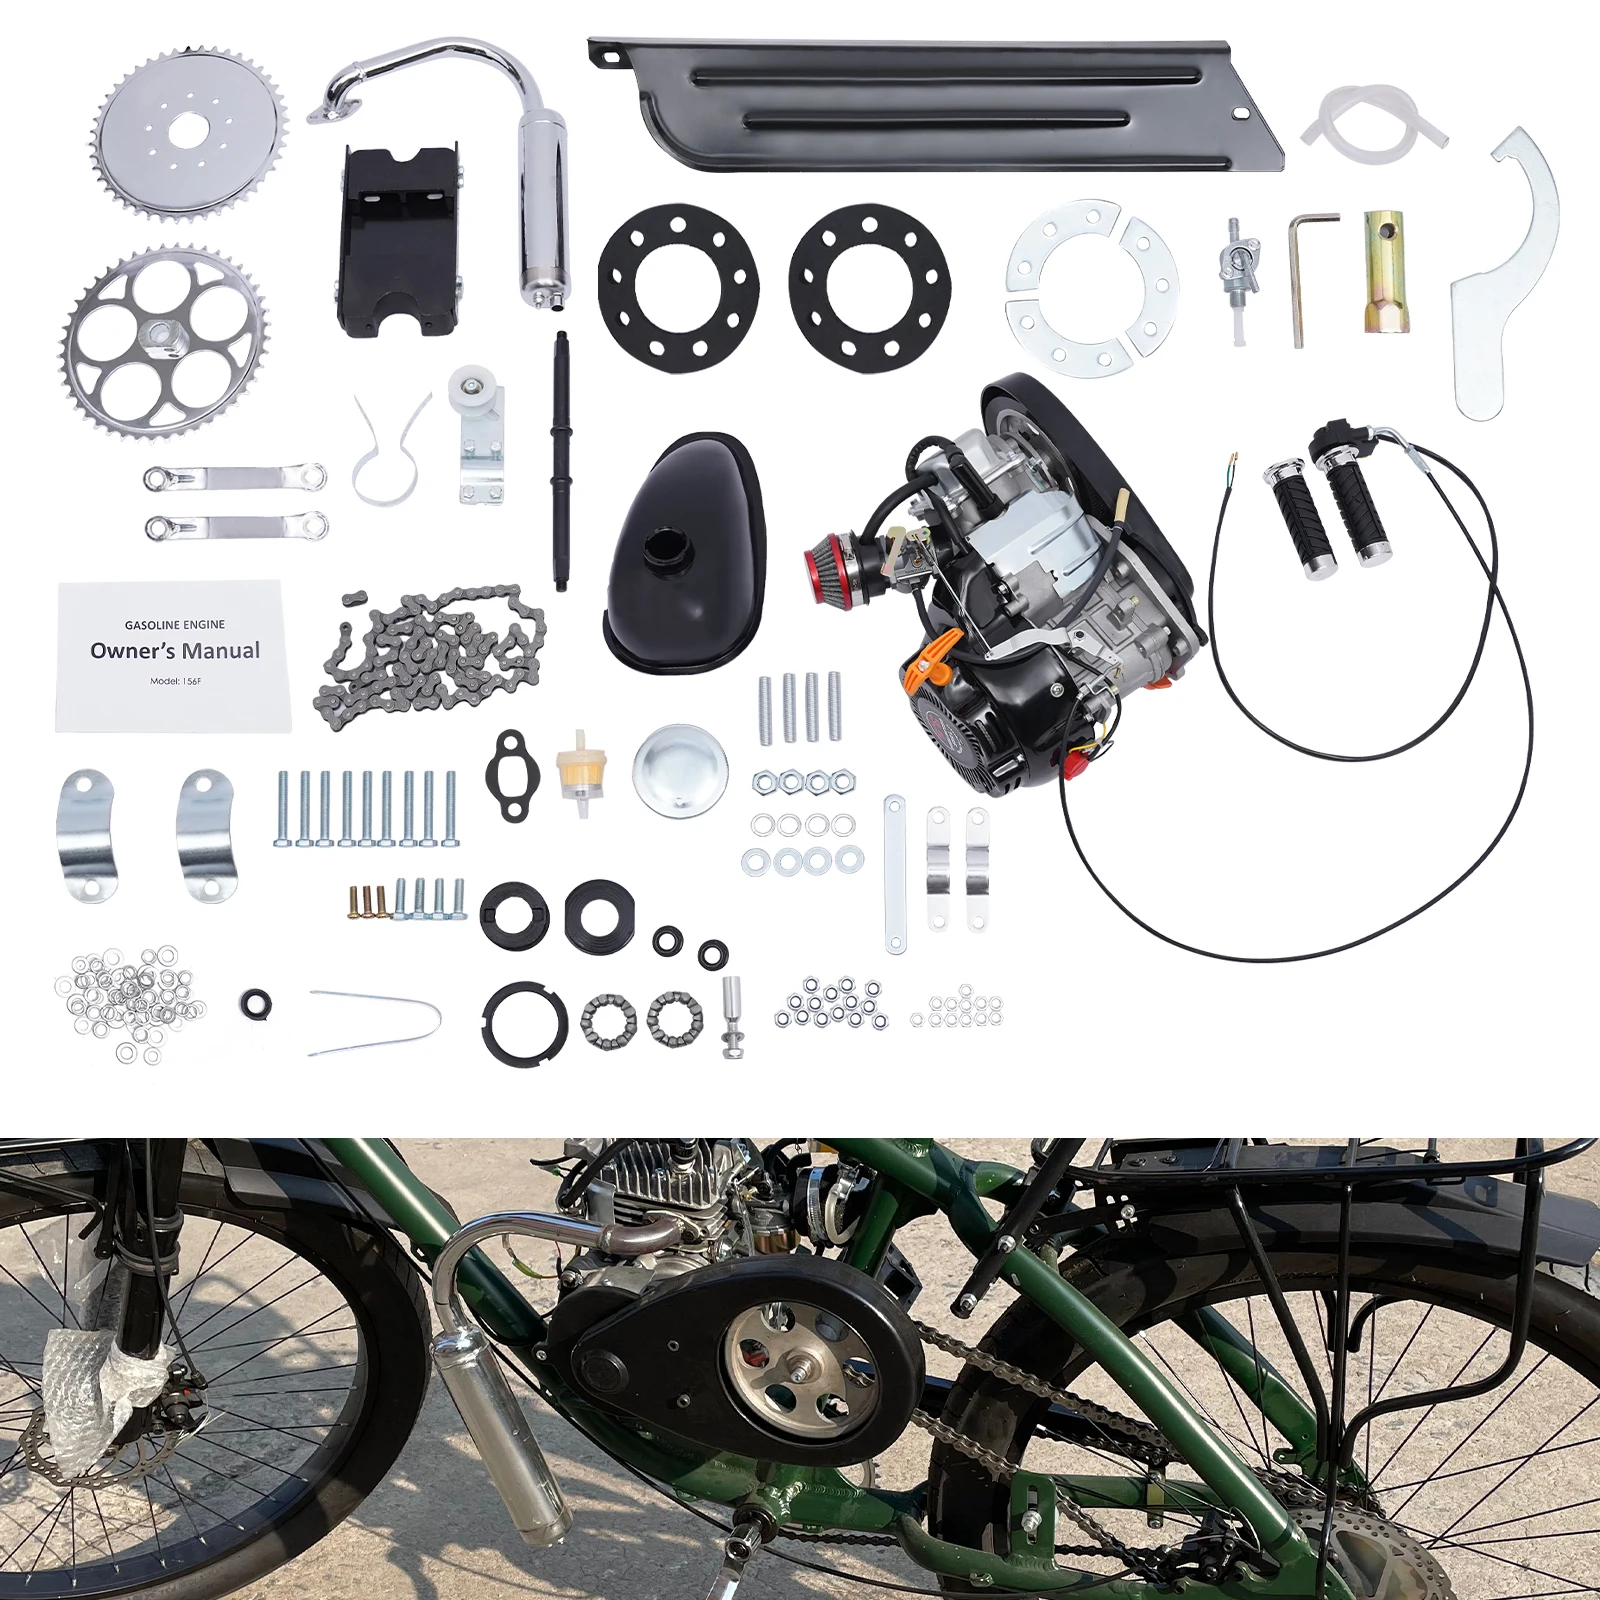 100CC 4 פעימות אופנוע גז ממונע, מנוע אופניים DIY סט מלא ערכת אופניים שונה מנוע ערכת 3600rpm קירור אוויר